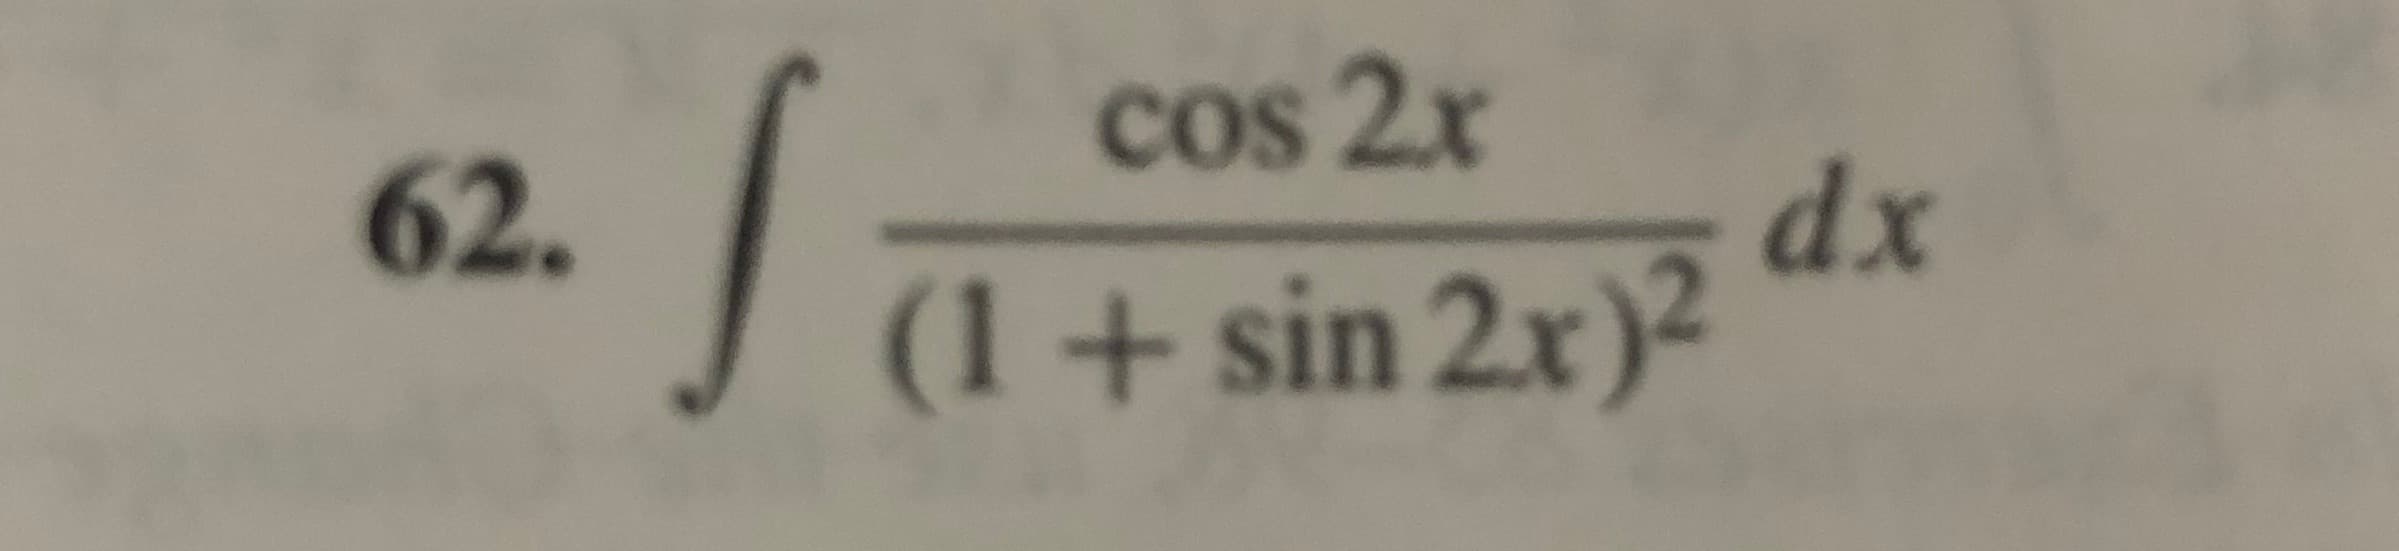 cos 2x
62.
dx
(1+ sin 2x)²
